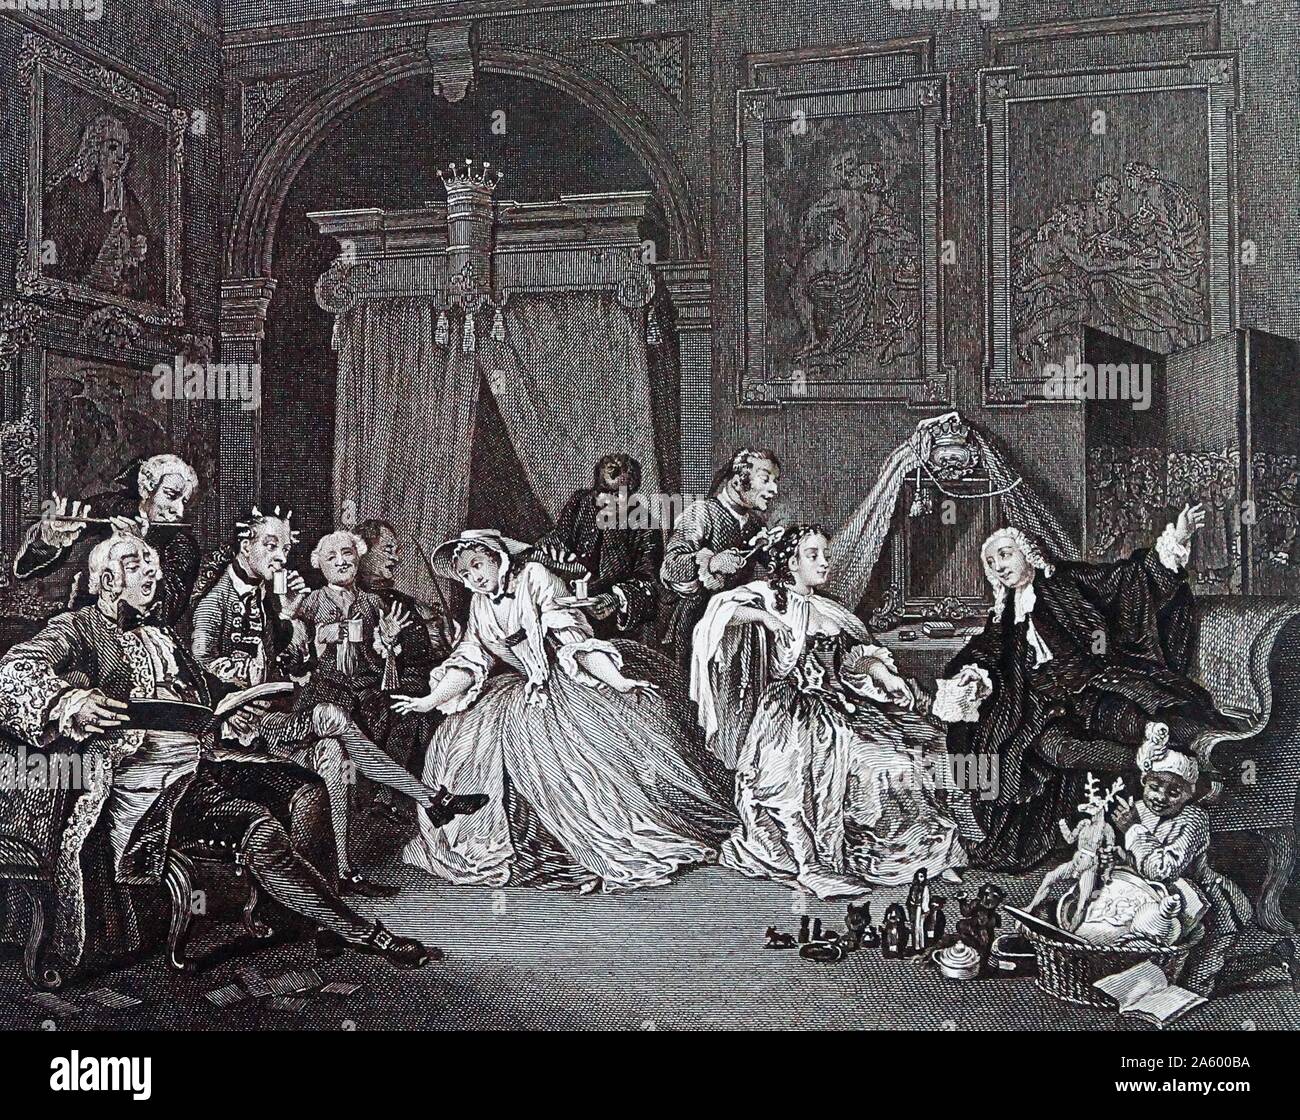 La toilette de mariage à-la-mode, 1743 - 1745, par William Hogarth. illustre la Comtesse est assis avec son dos à ses invités, inconscient, comme un serviteur s'occupe de sa toilette. Par William Hogarth (1697 - 1764). Anglais, peintre, graveur, satiriste. Banque D'Images